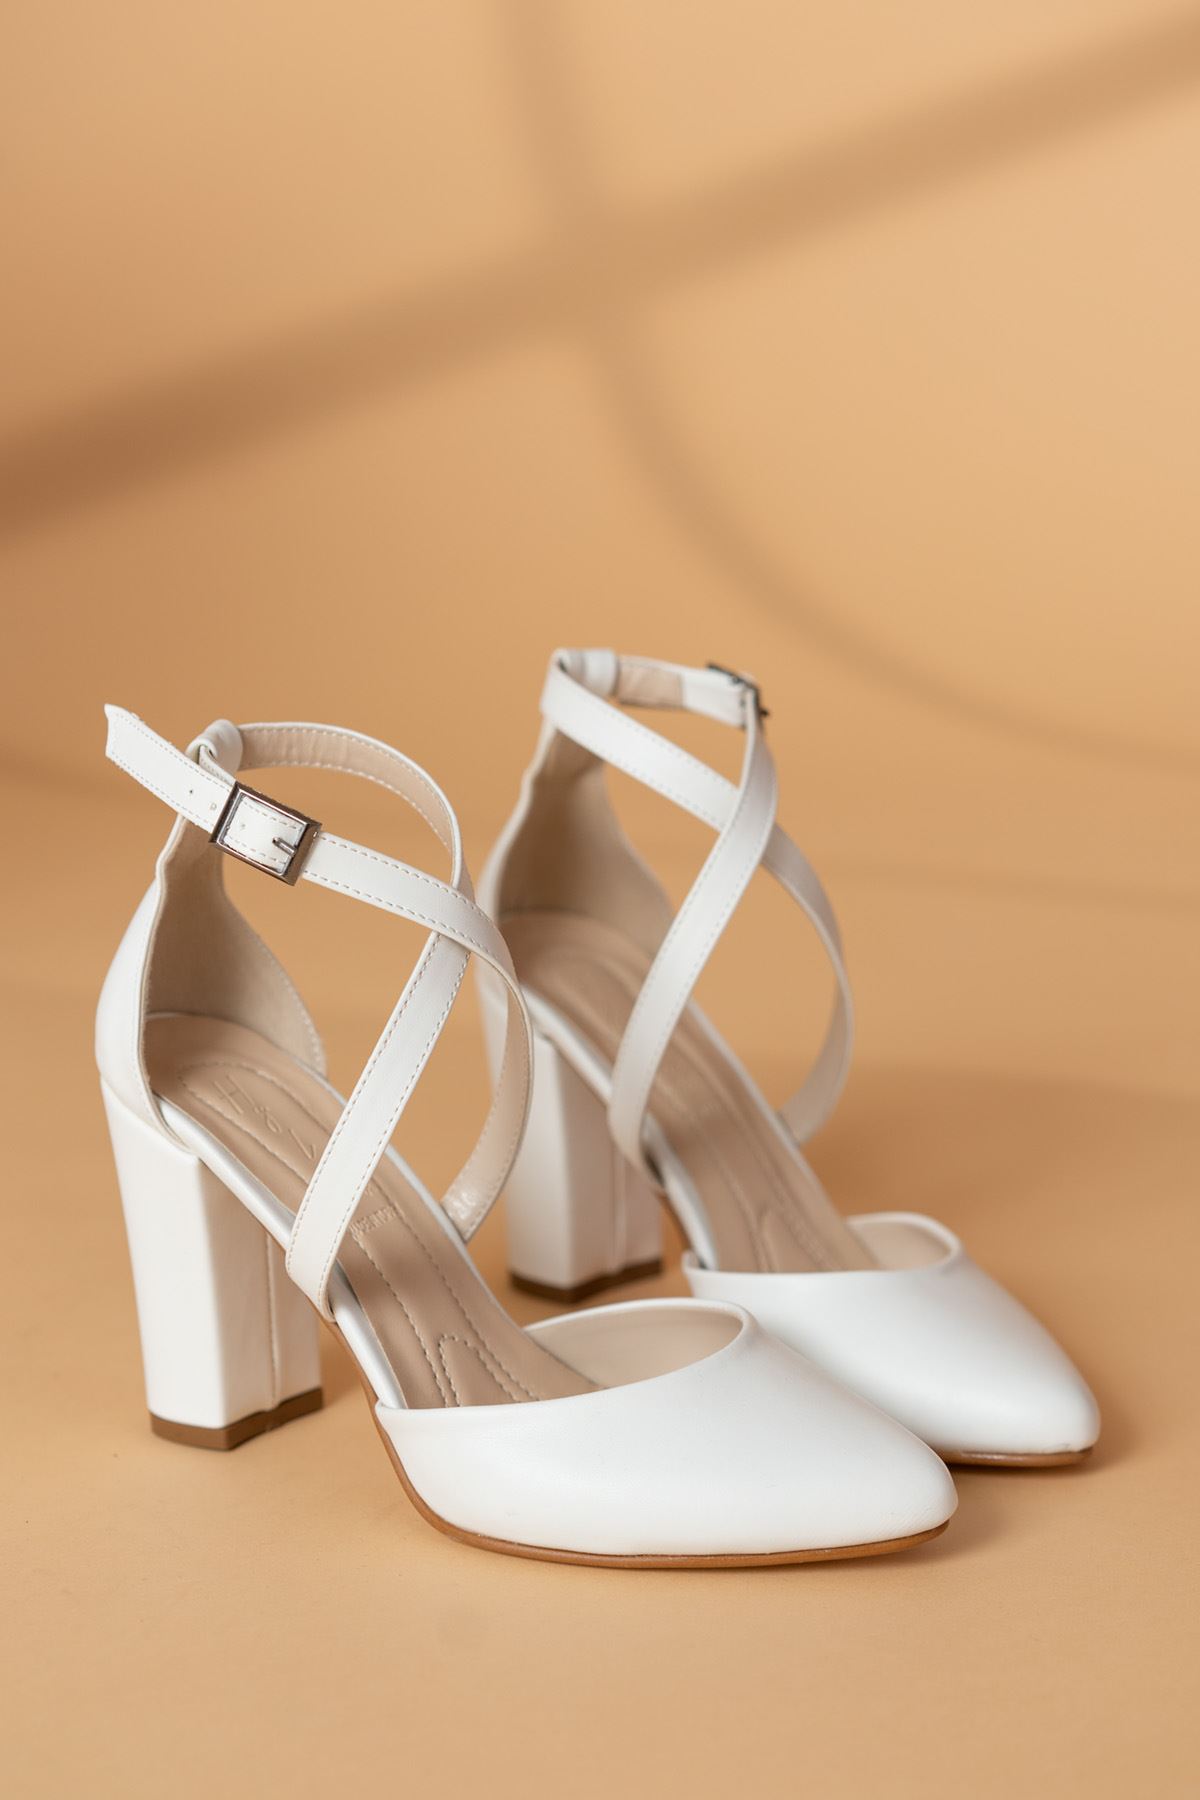 Evan Beyaz Cilt Topuklu Kadın Ayakkabı 